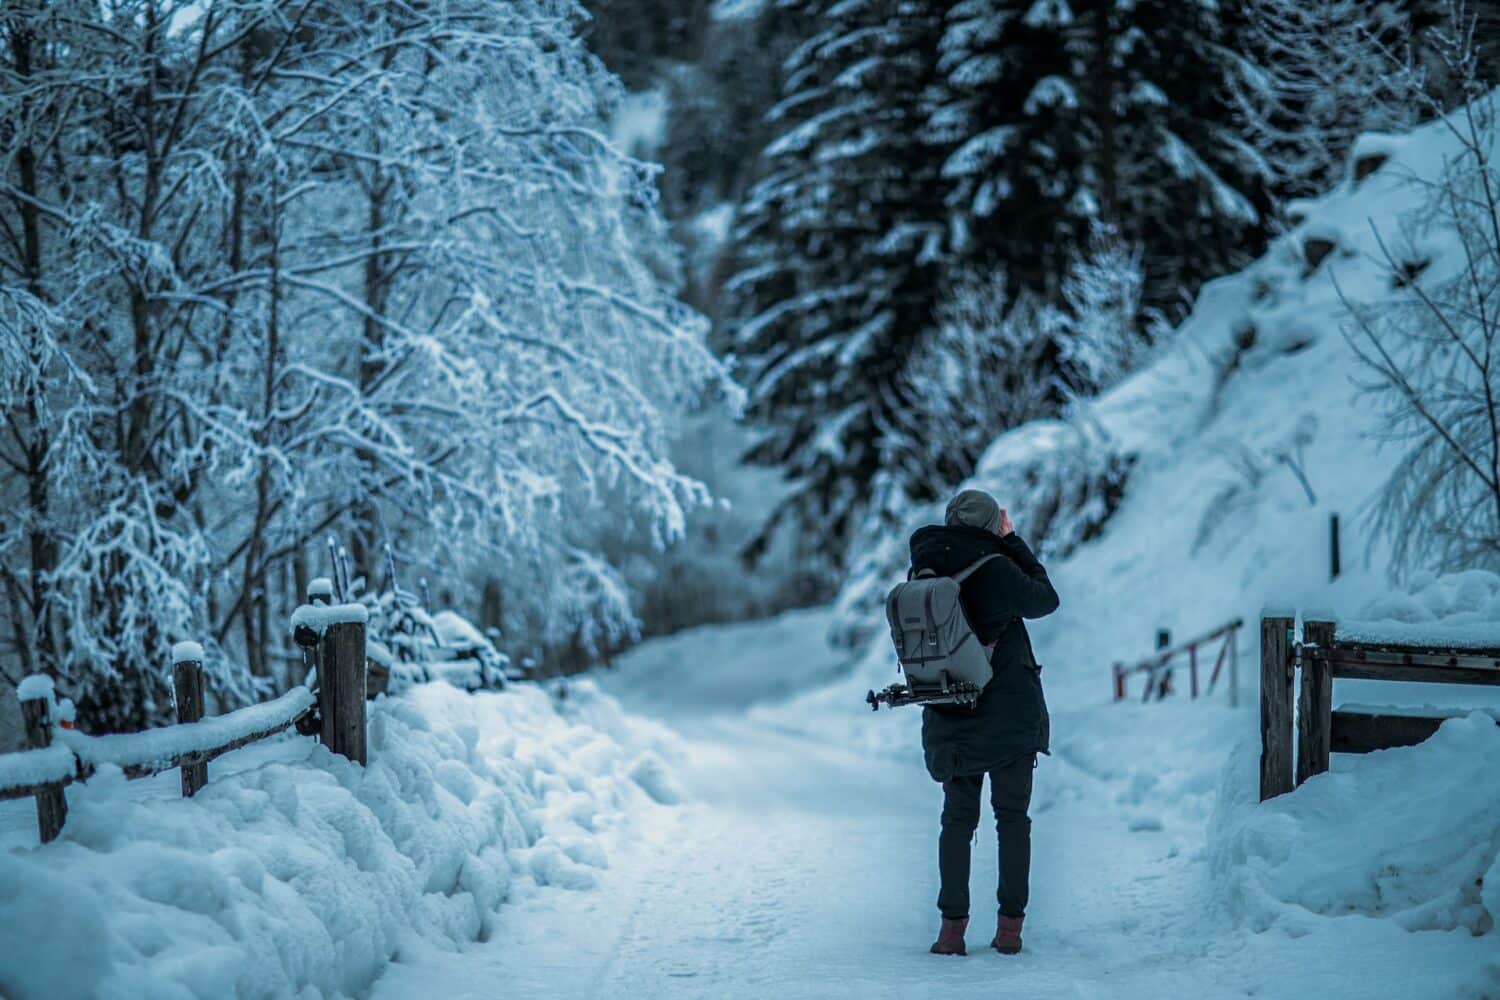 Pessoa com uma mochila nas costas etirando foto de algo em sua frente. Ao redor, há uma cerca e algumas árvores covertas de neve, assim como o chão. - Foto: Armin Djuhic via Unsplash